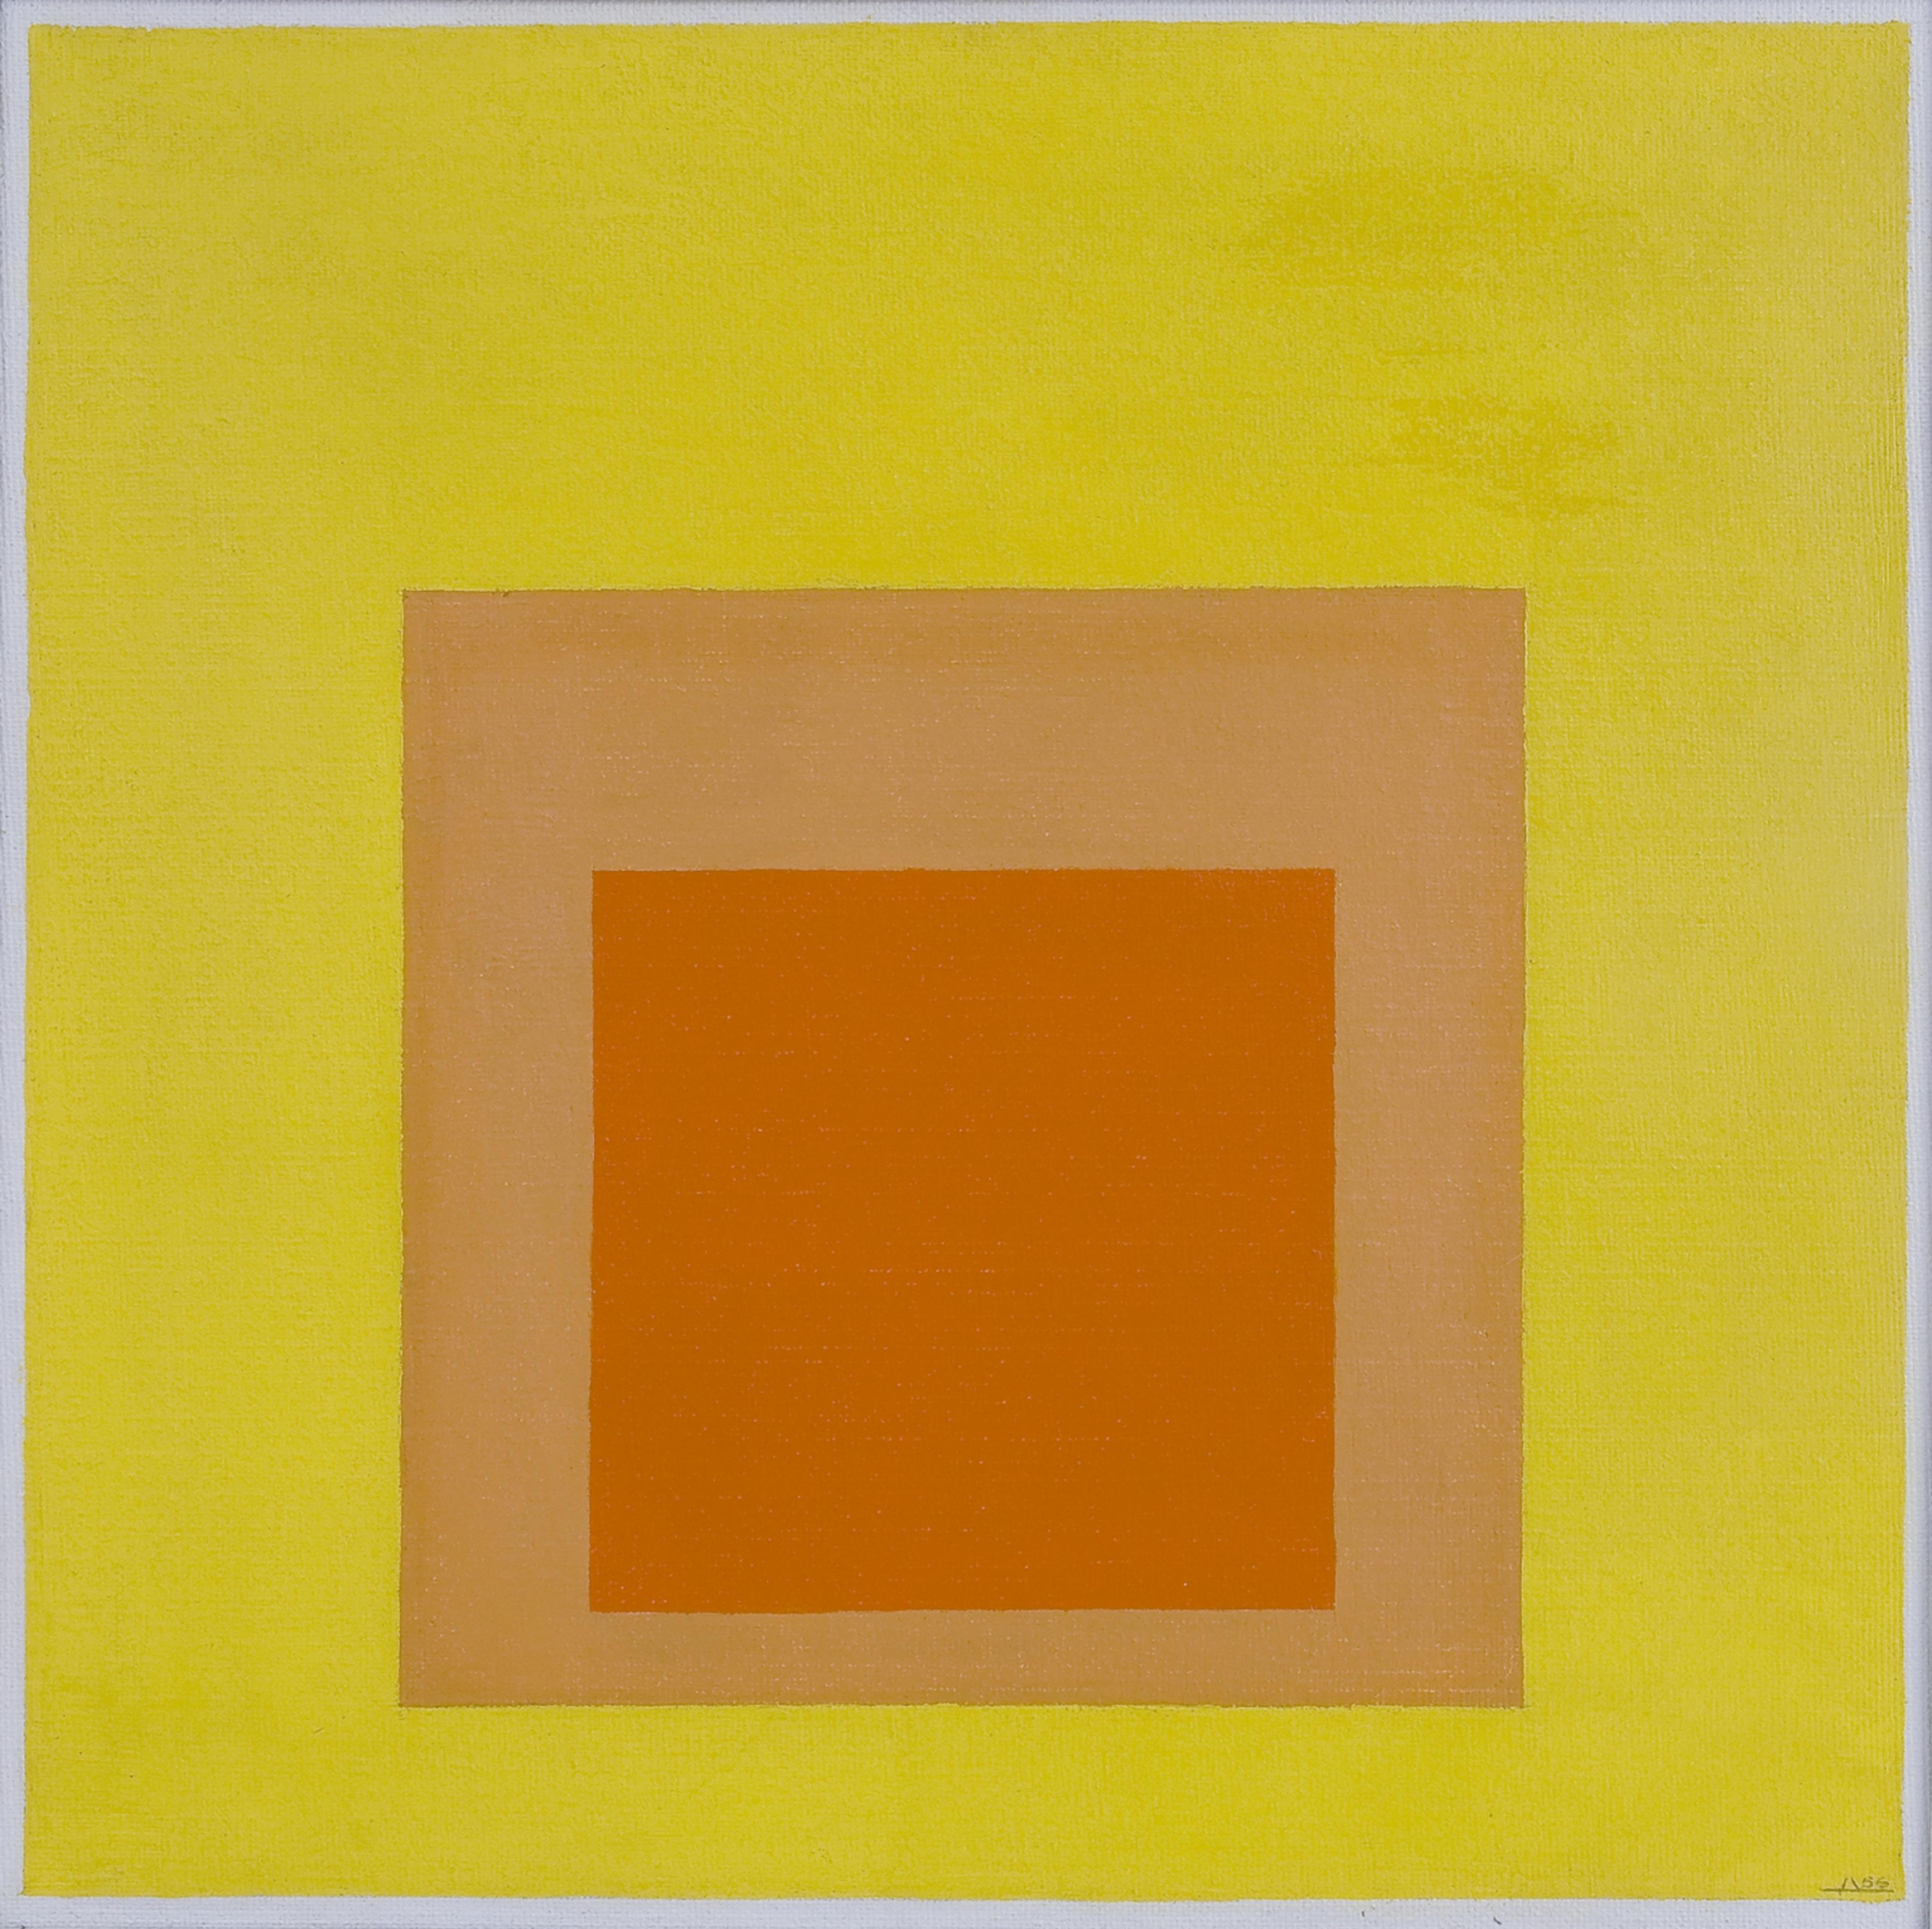 Et abstrakt bilde med kvadrater i oransje og gult